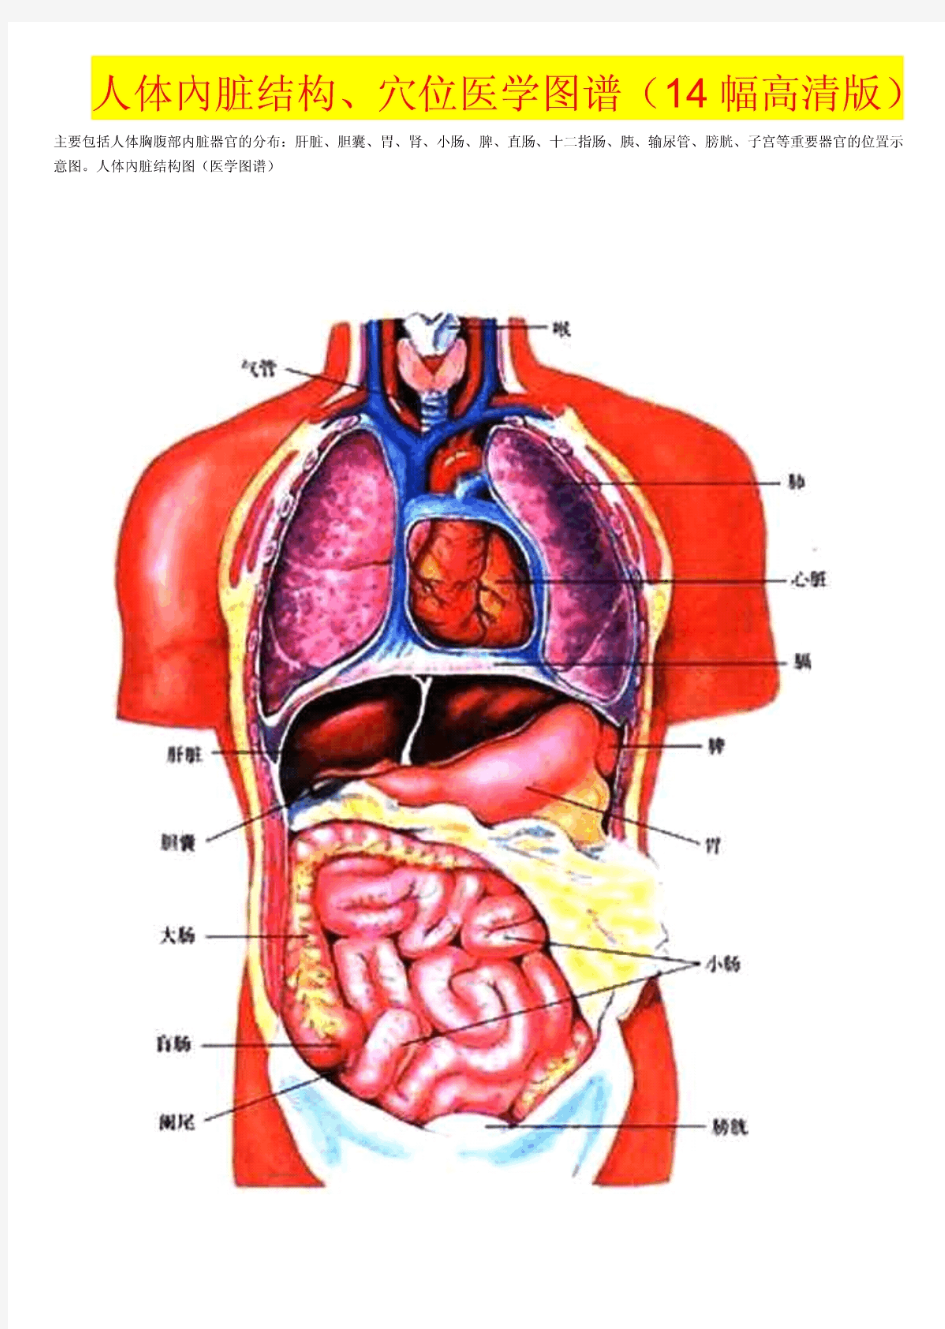 人体内脏结构、穴位医学图谱(14幅高清版)